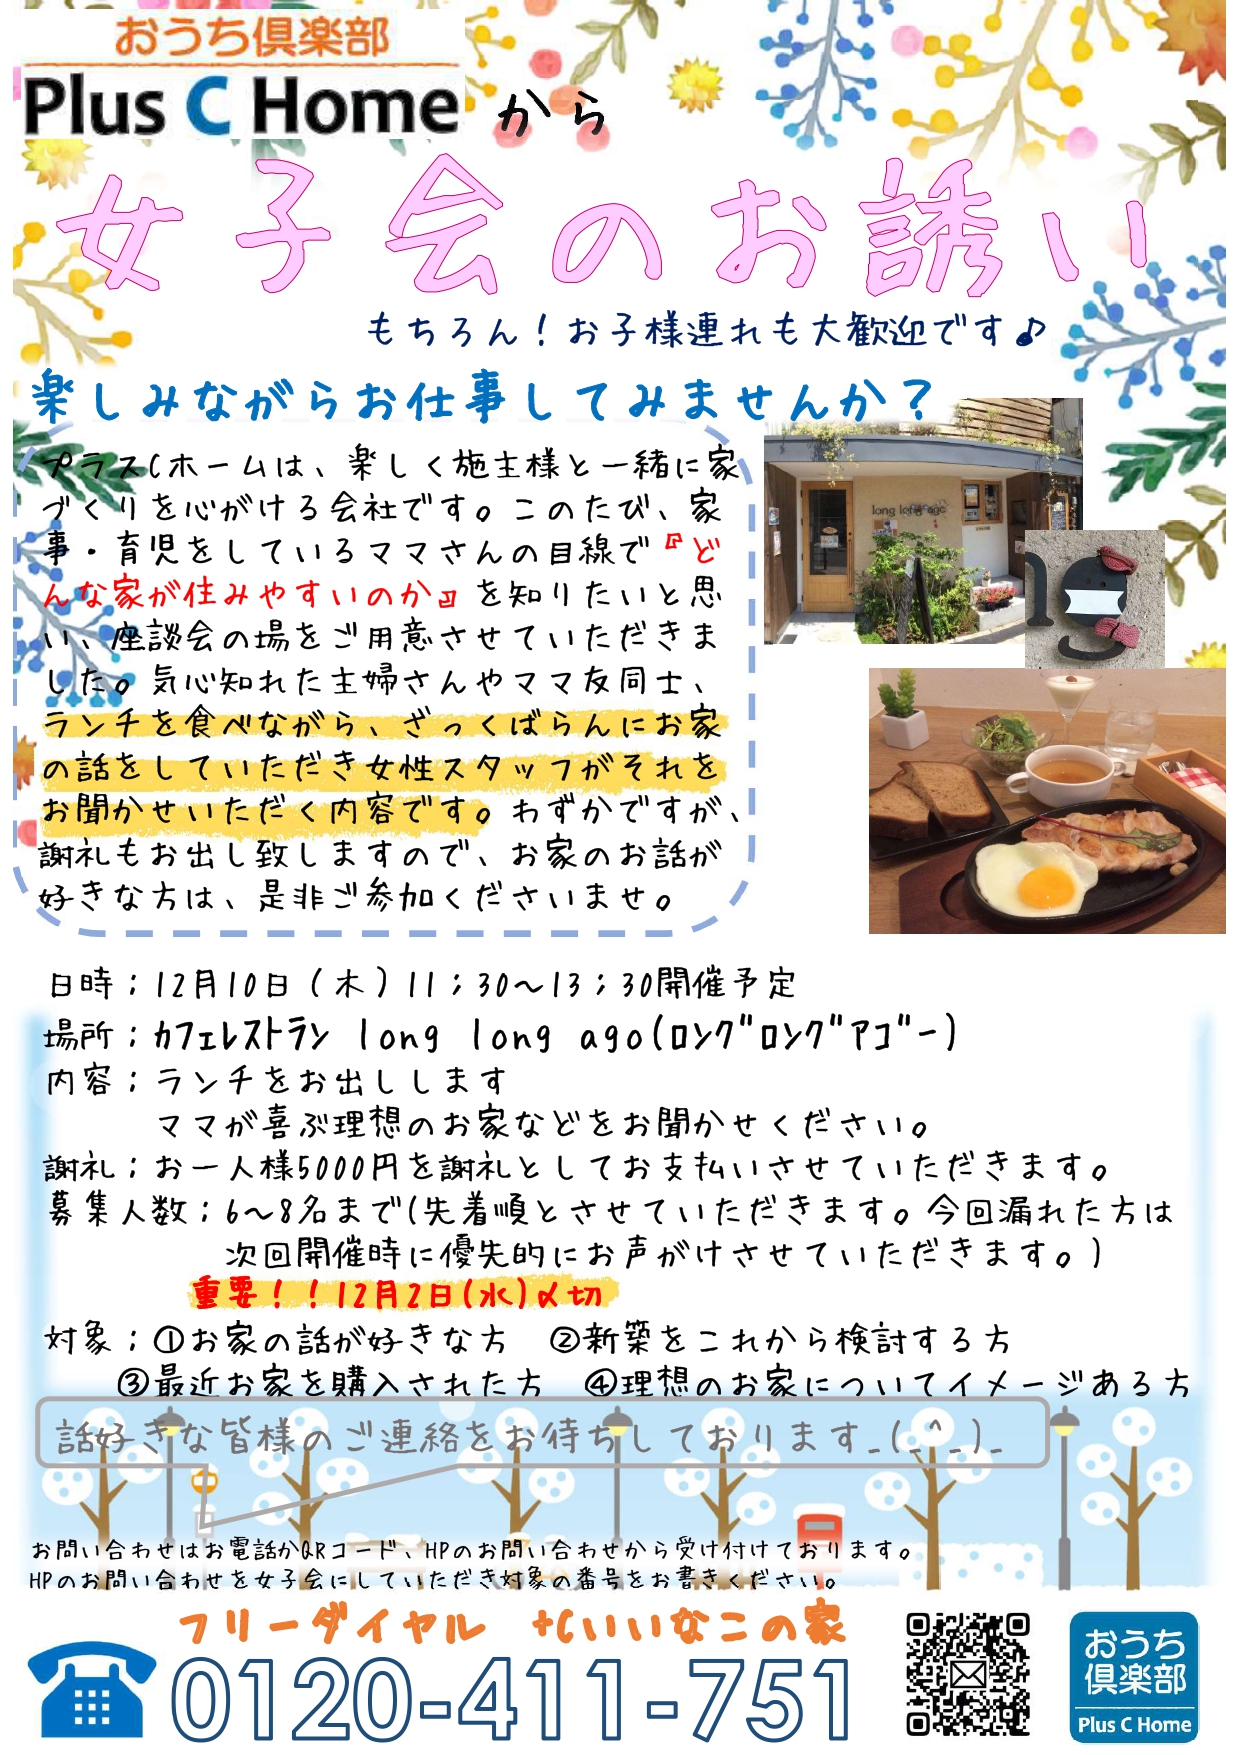 大阪市鶴見区で高気密・高断熱の注文住宅を建てています工務店Plus C Homeがお家の話が聞きたくて女子会を開催します♪